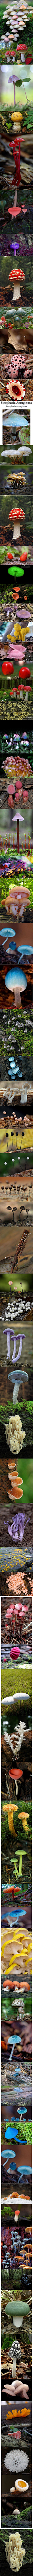  植物 蘑菇 风光 大自然的美景  